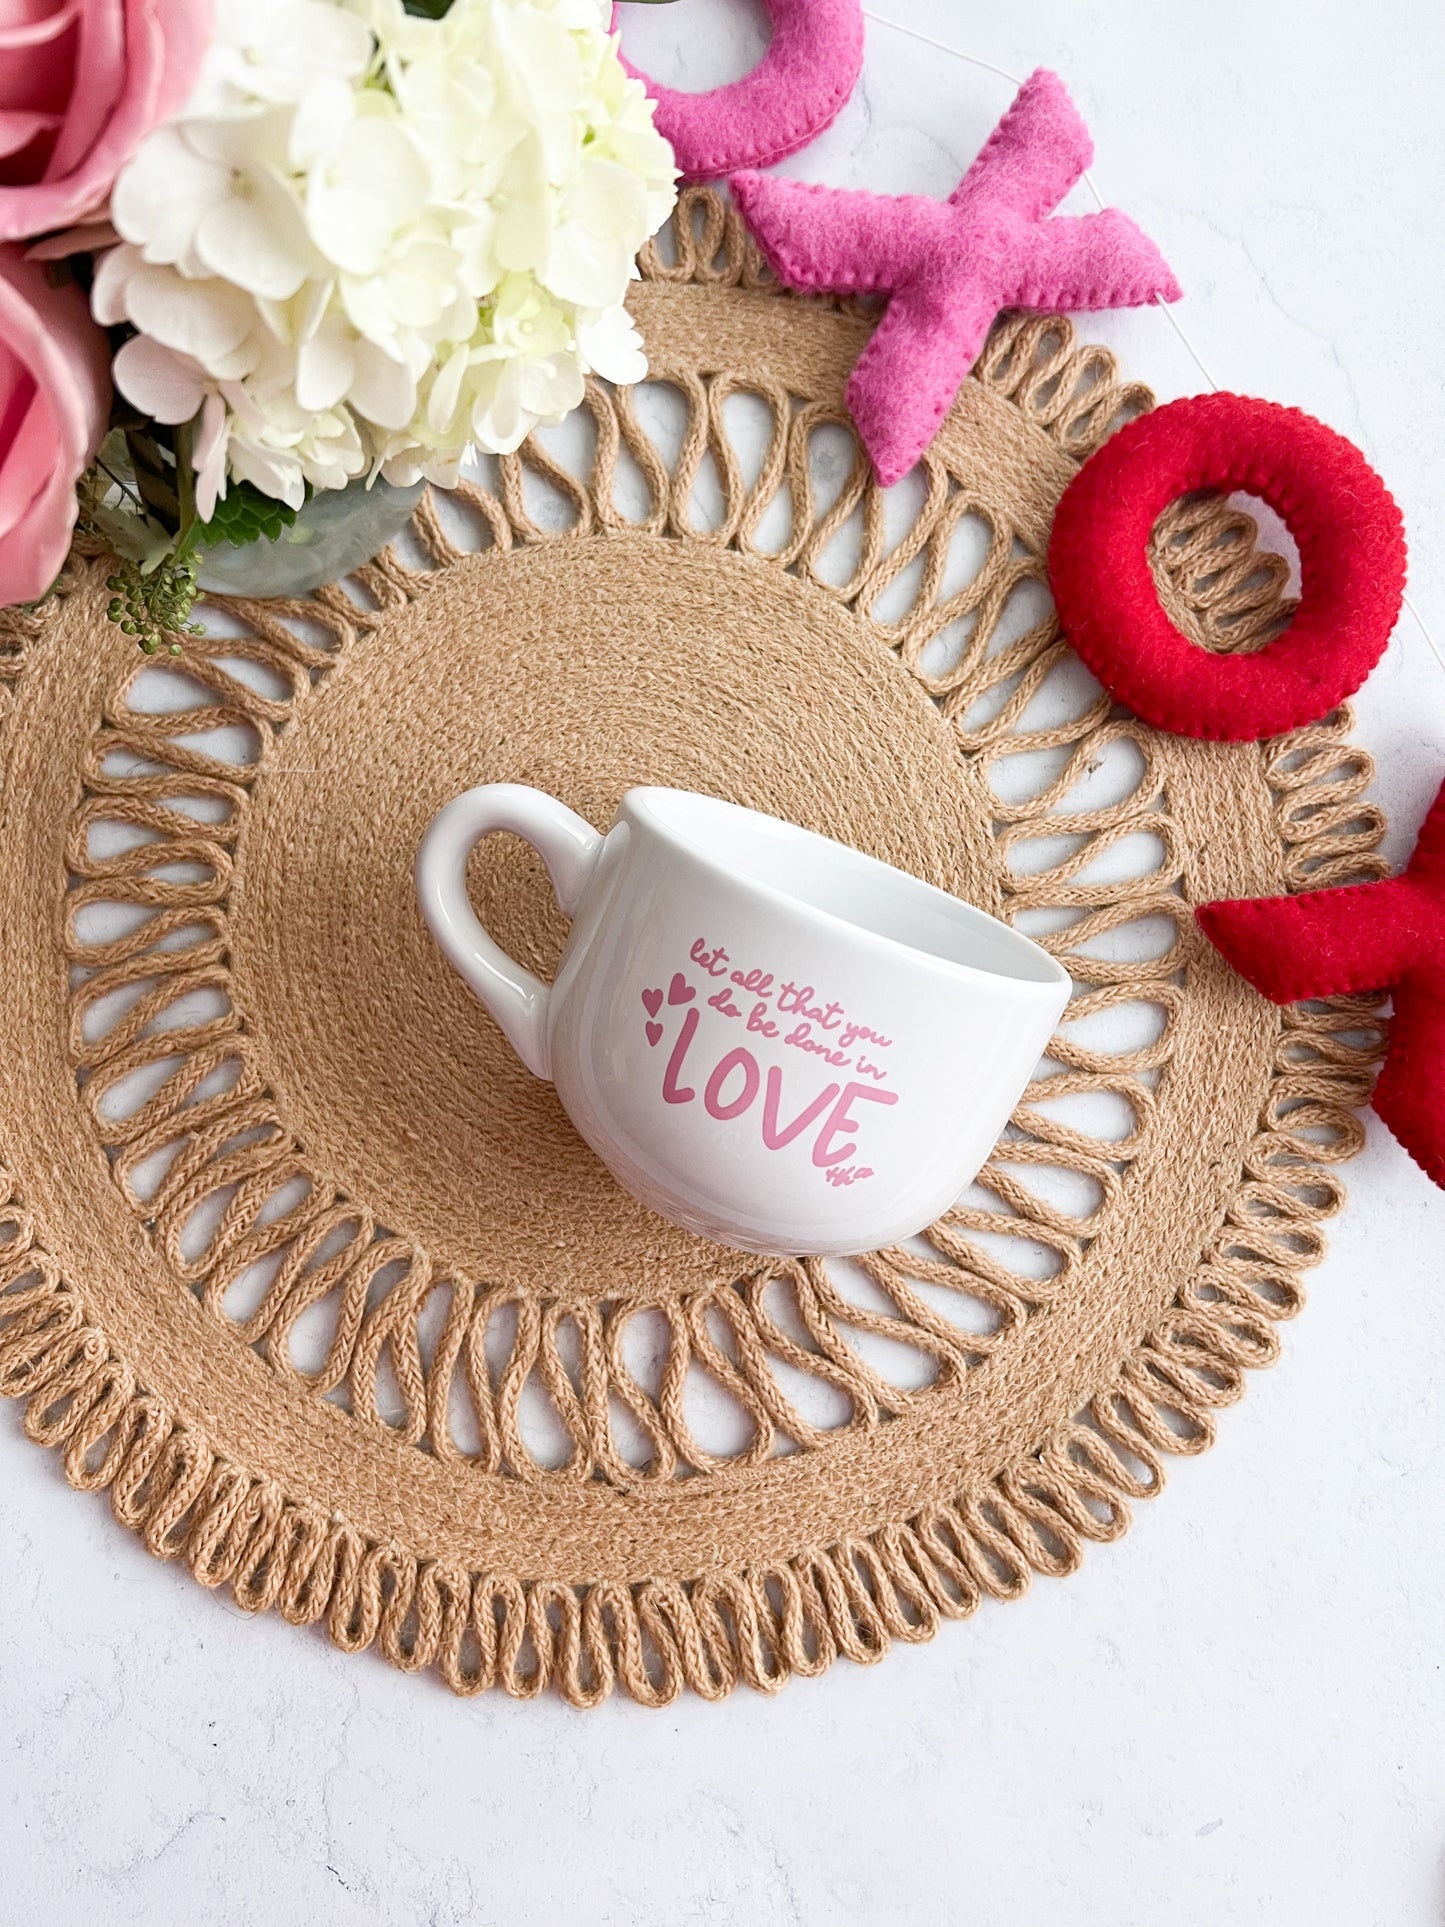 LOVE | 15oz Ceramic Mug